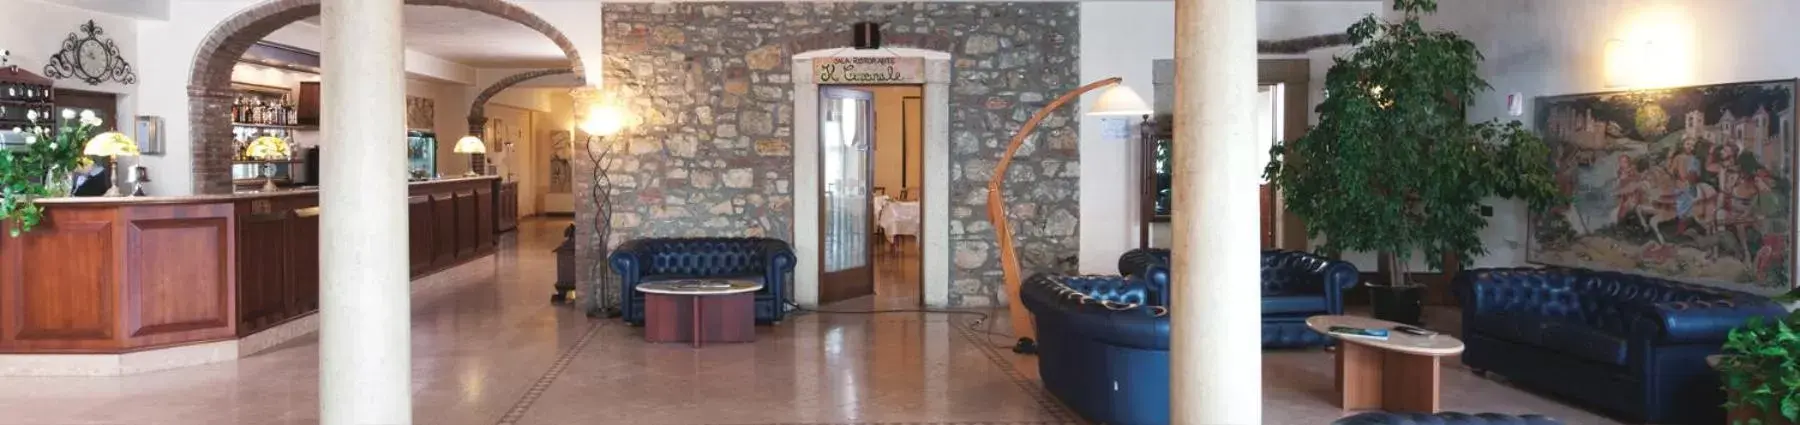 Lobby or reception in Primotel Brescia